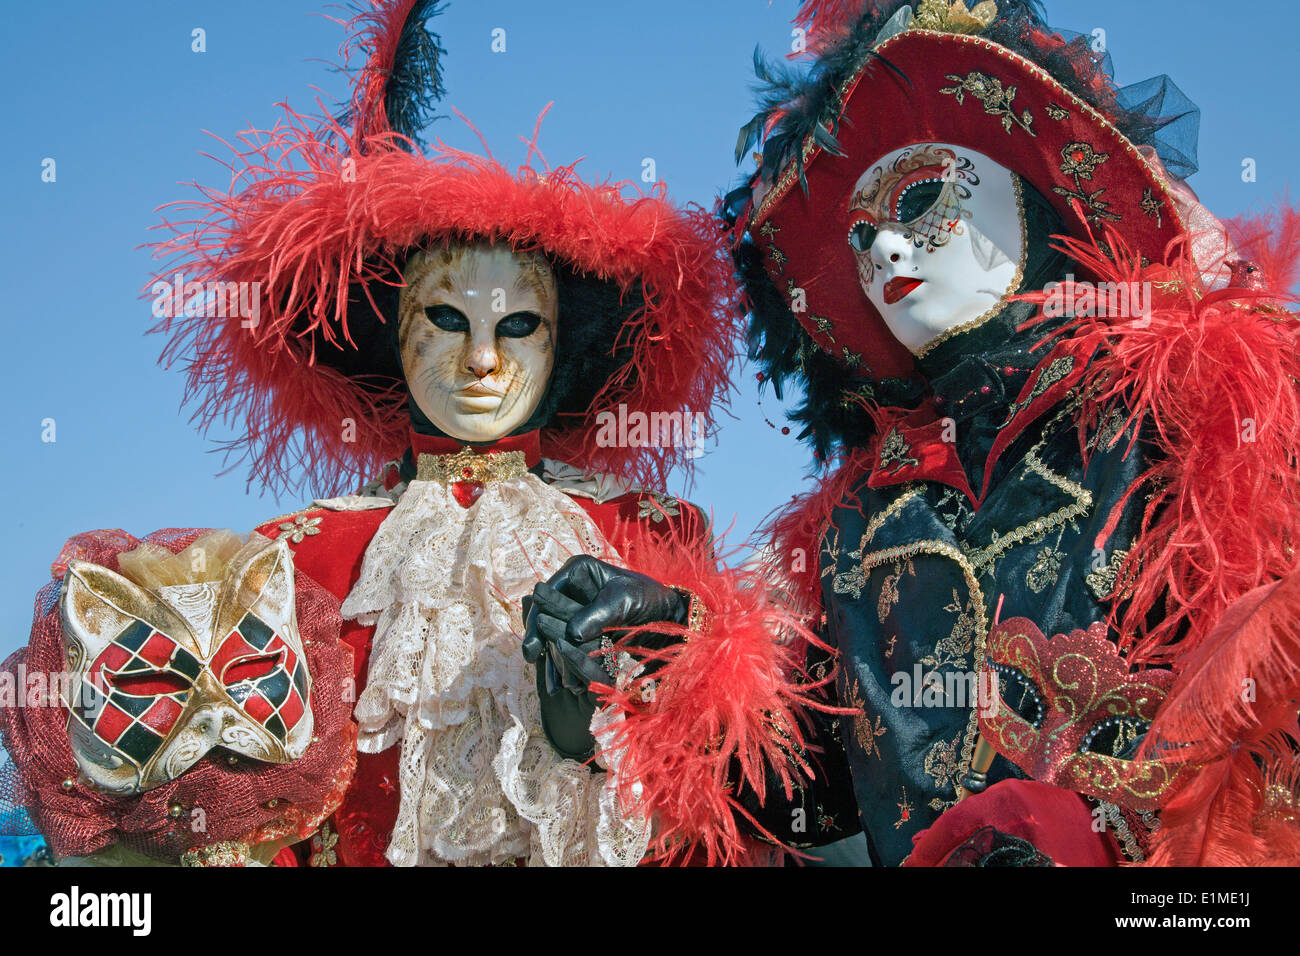 Venise, Italie - février 26, 2011 : paire dans un masque de carnaval Banque D'Images